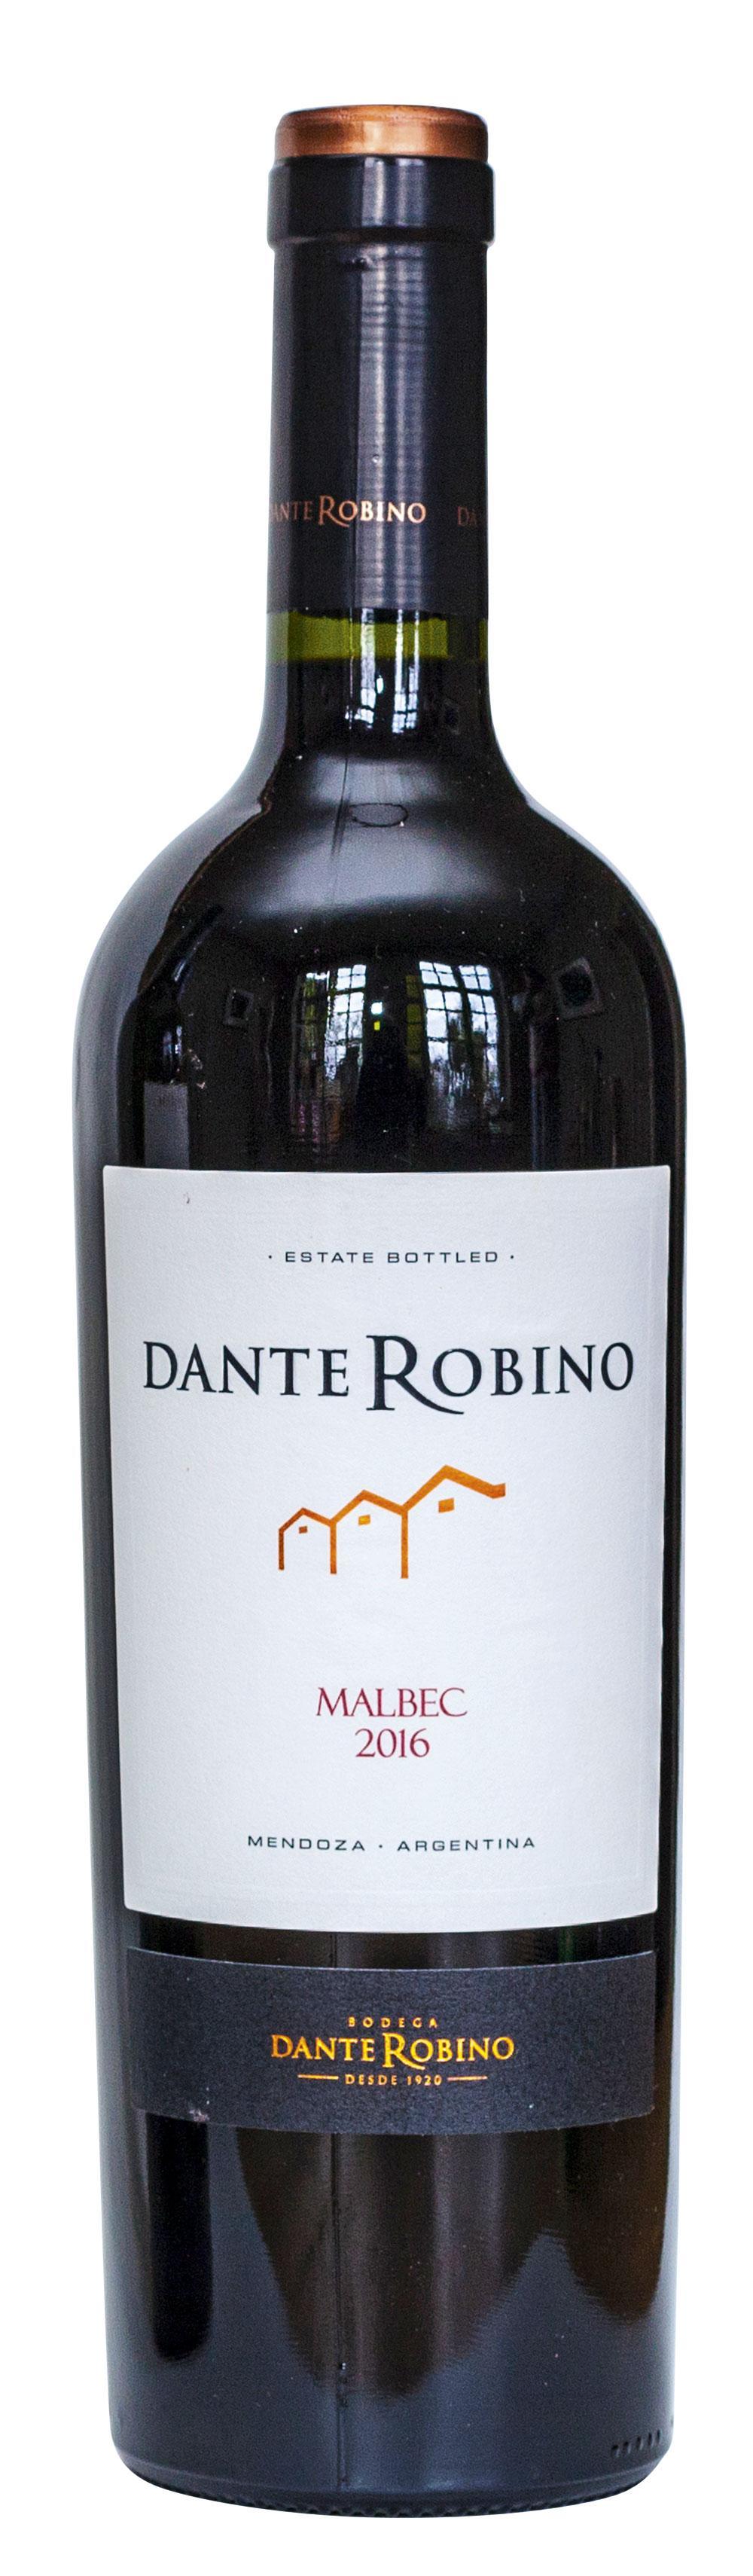 Dante Robino